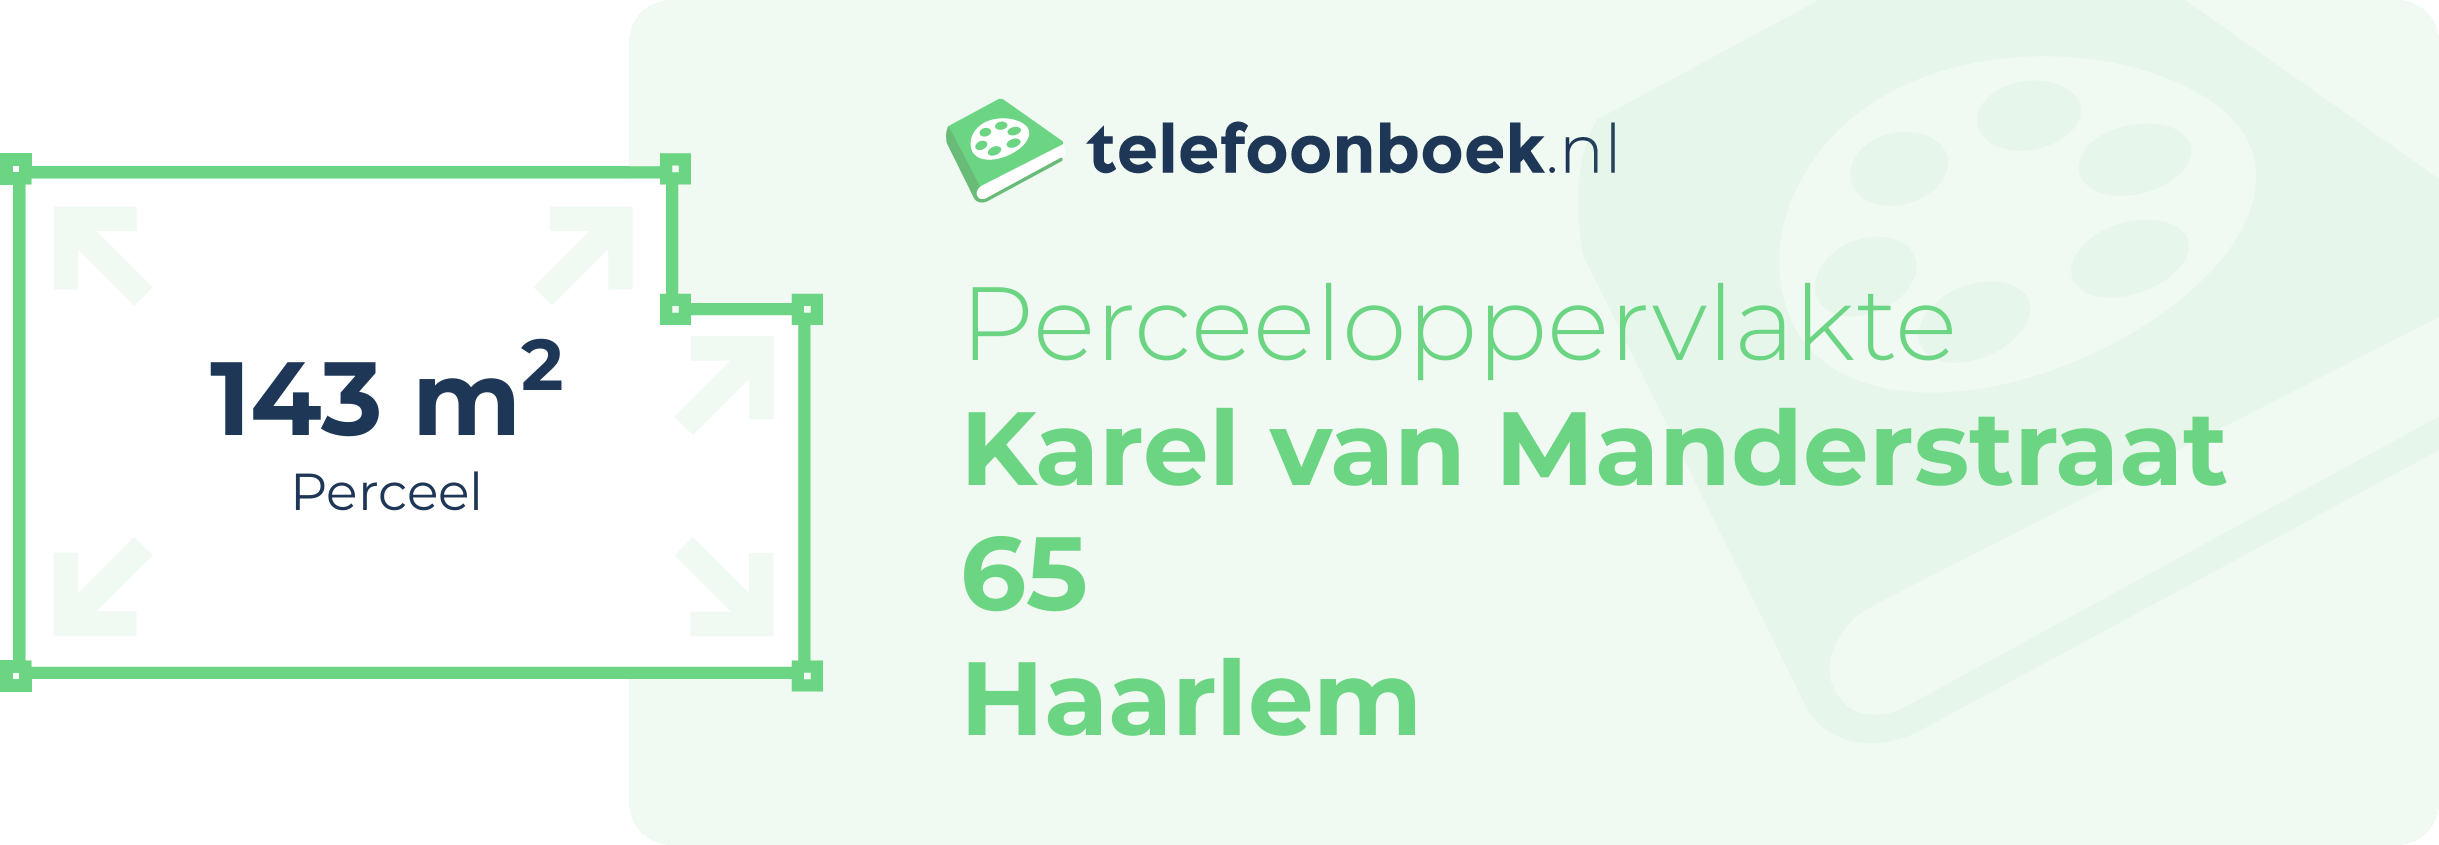 Perceeloppervlakte Karel Van Manderstraat 65 Haarlem